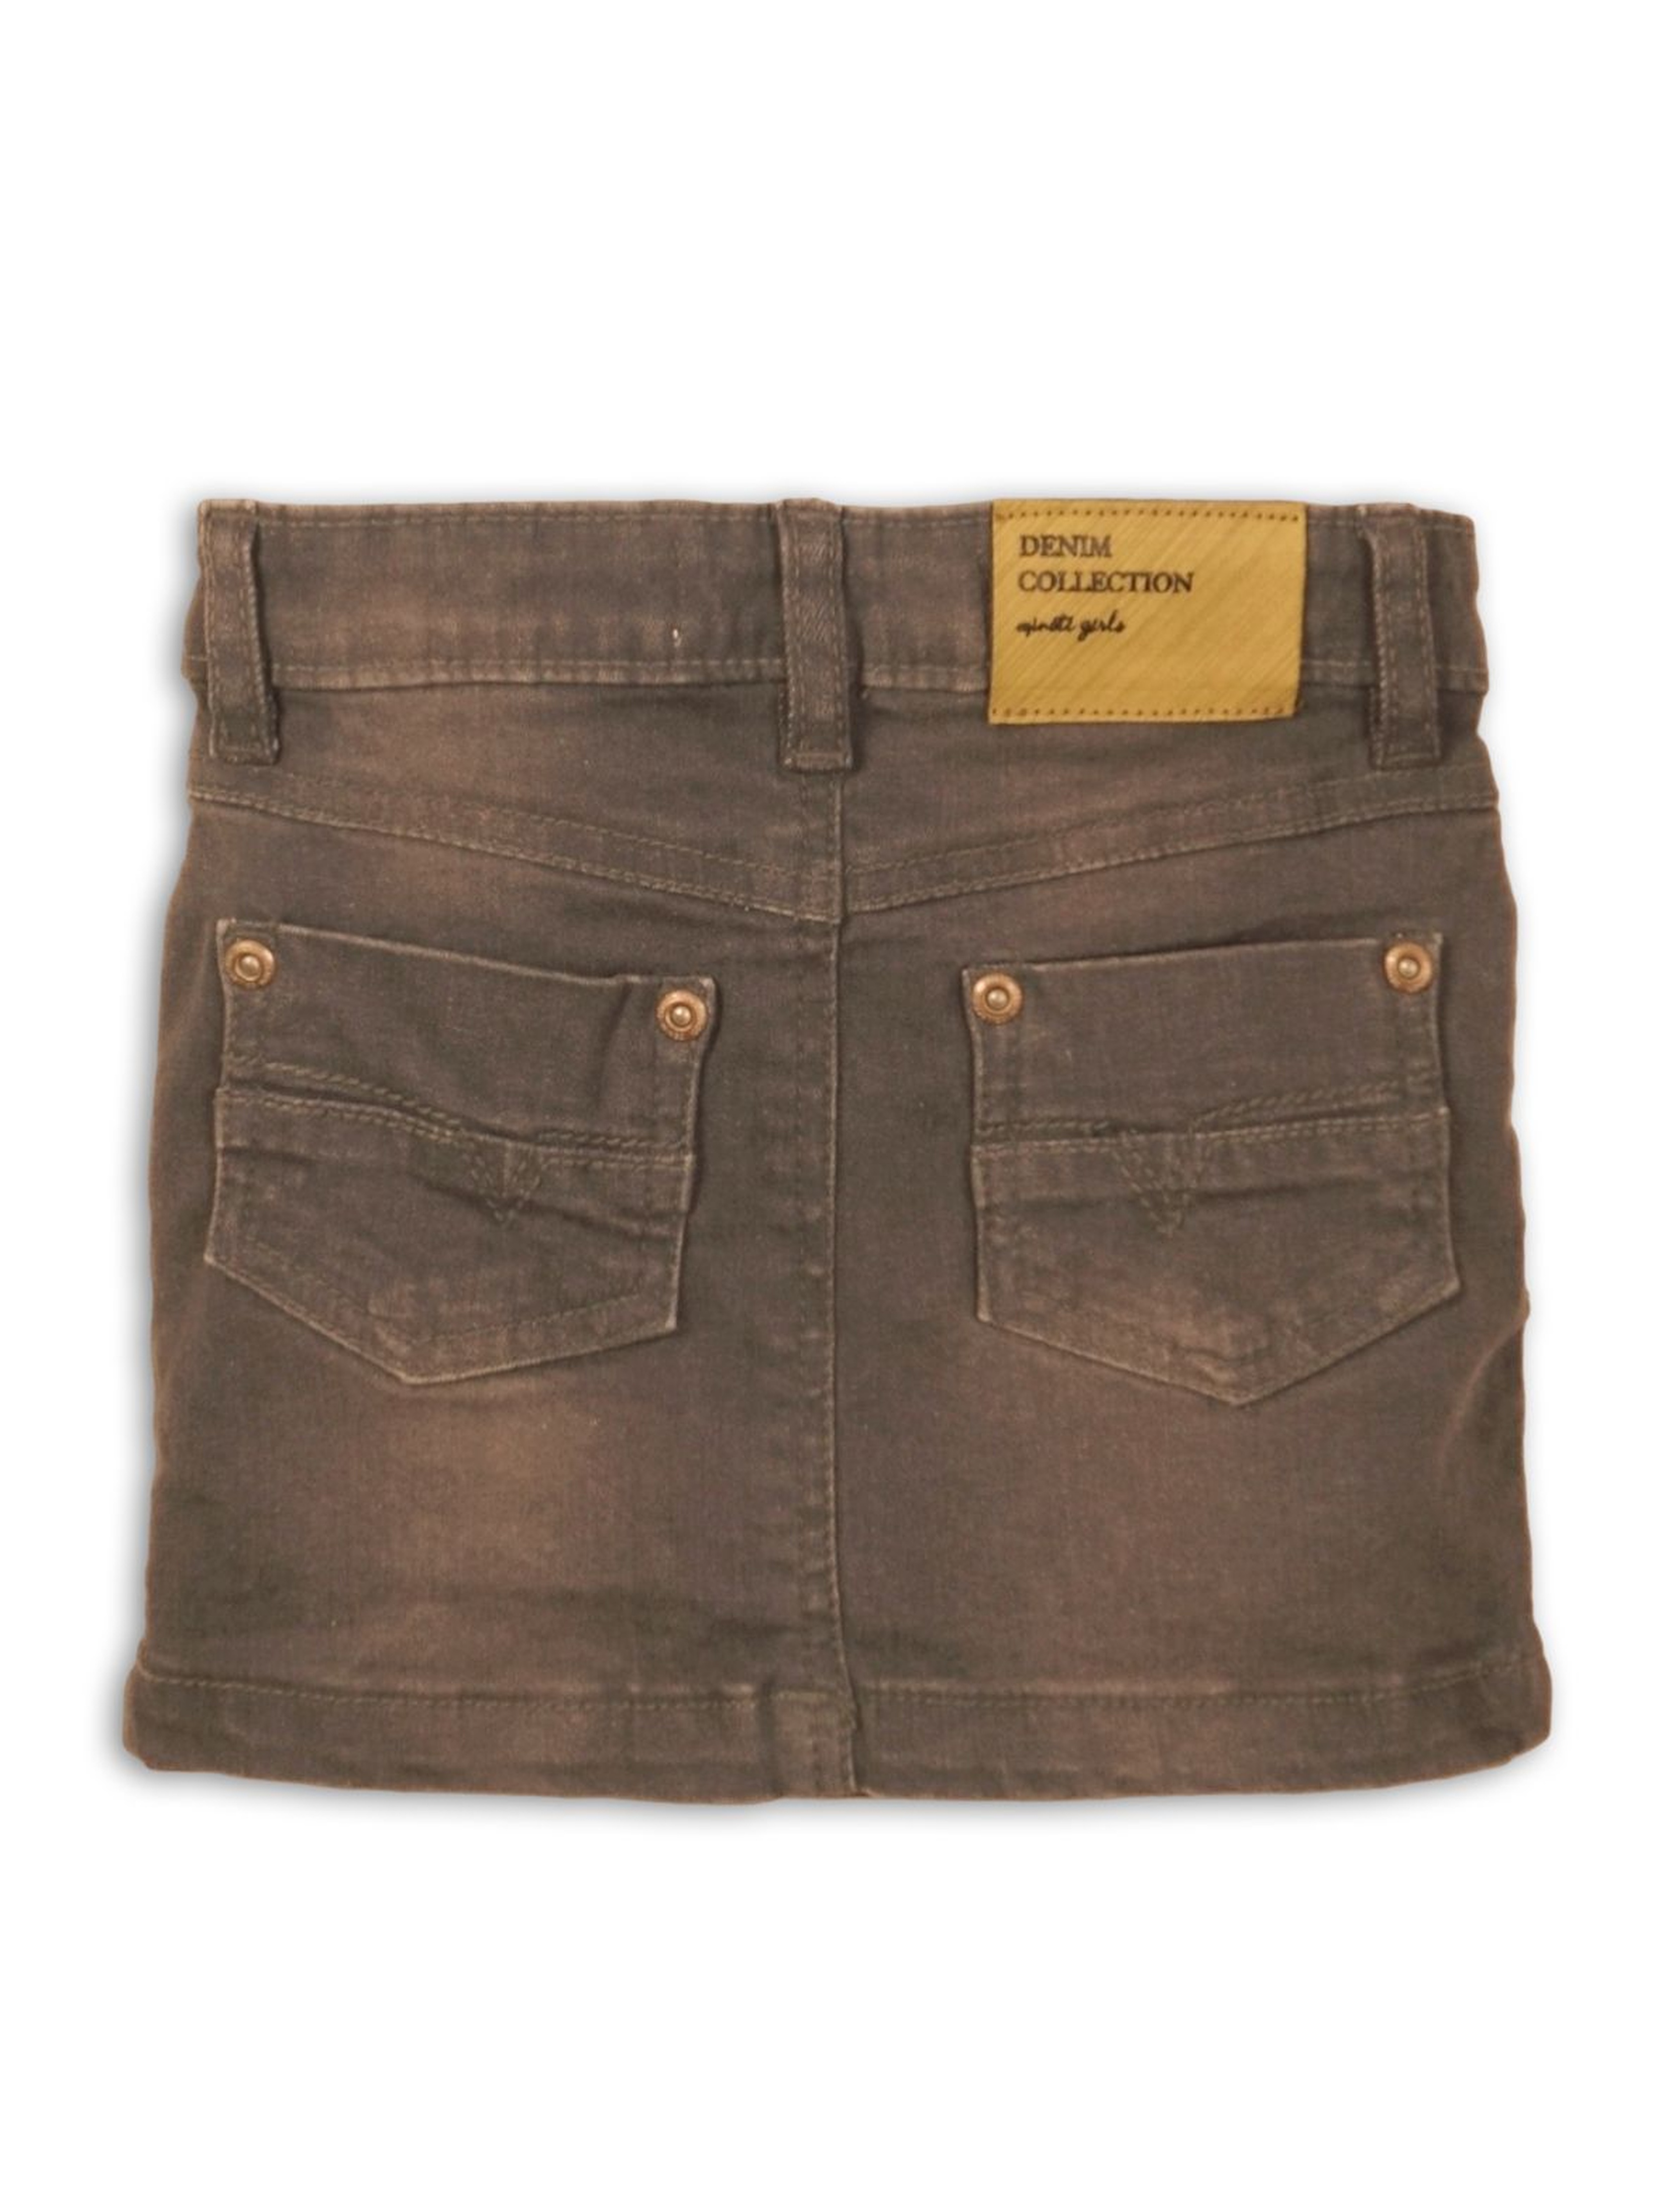 Spódnica jeansowa dziewczęca- brązowa